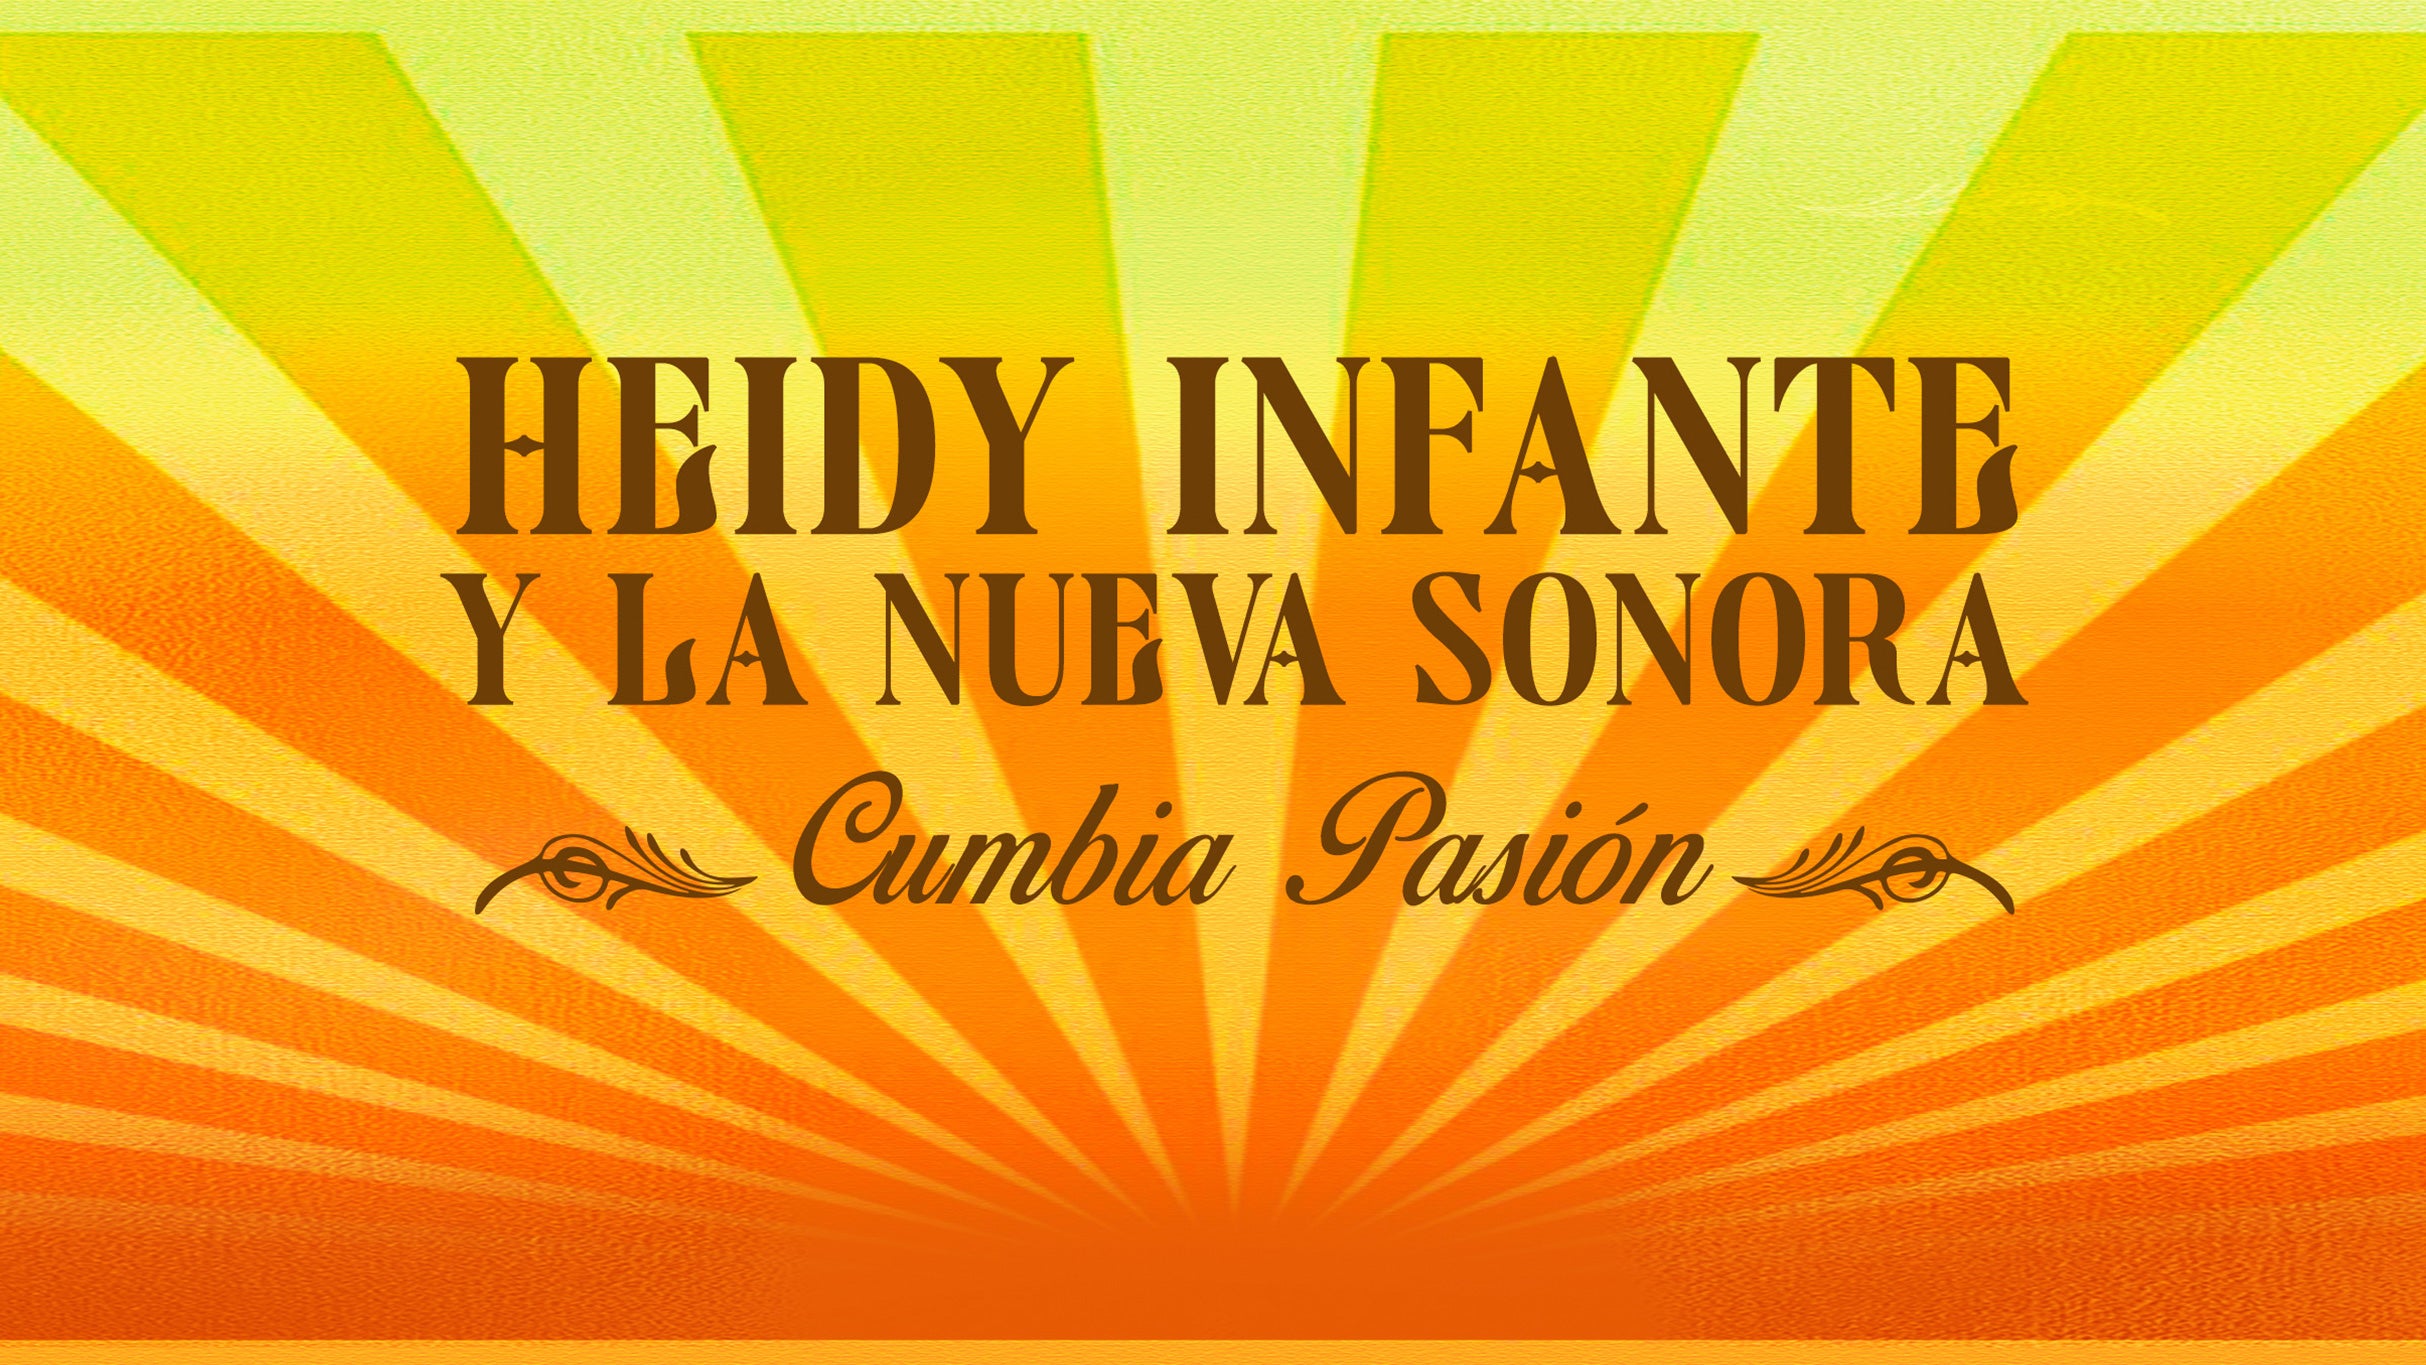 Heidy Infante y la Nueva Sonora Cumbia Pasion